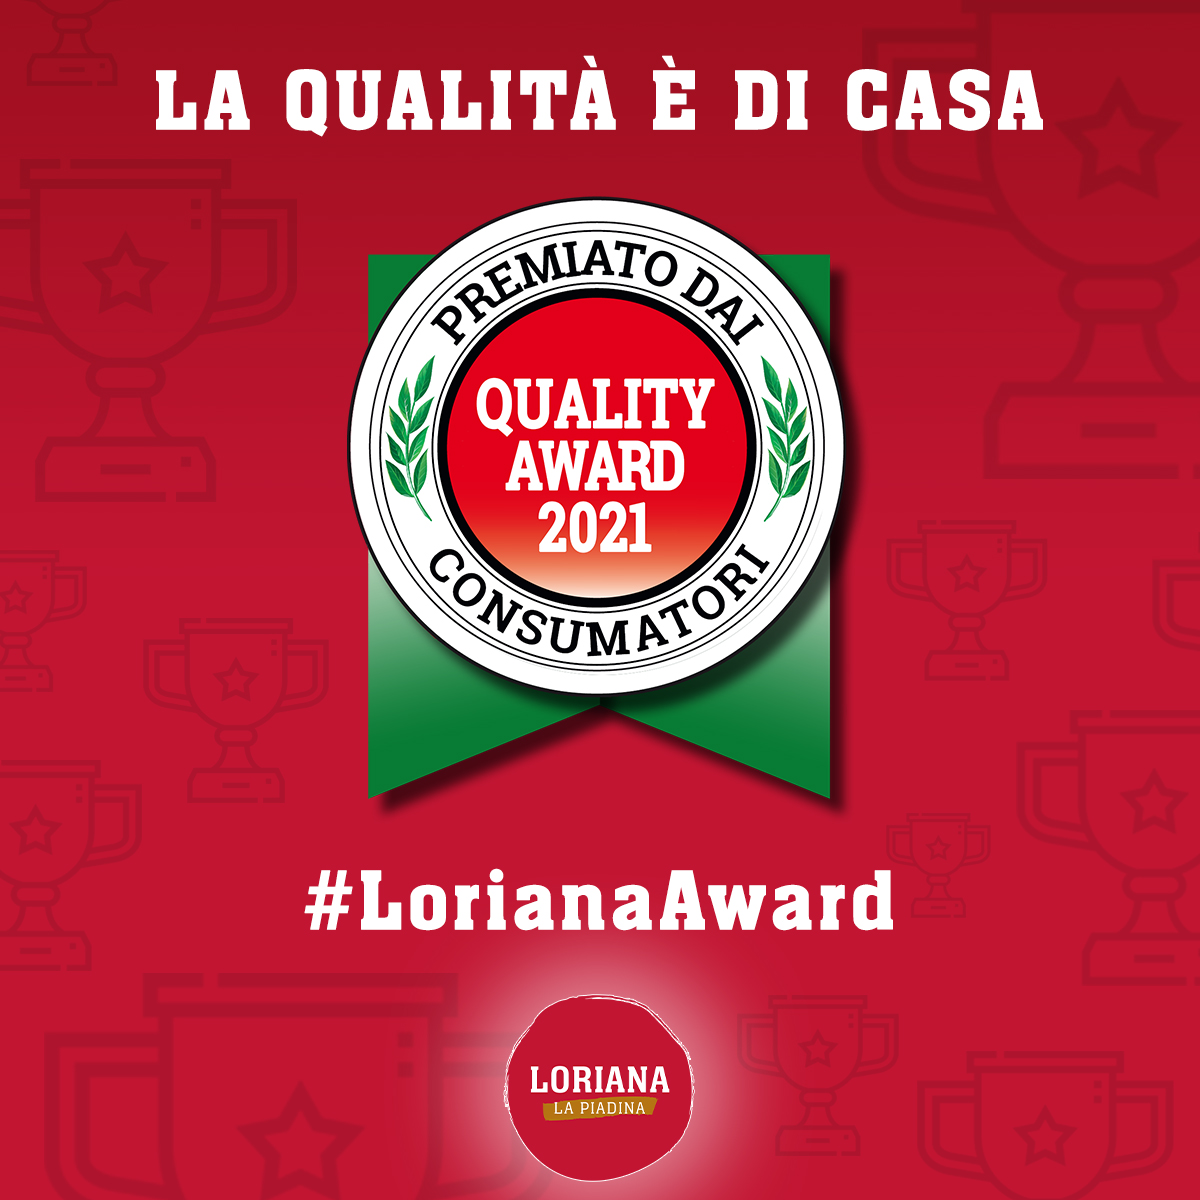 Le piadine Loriana si aggiudicano il premio Quality Award 2021!